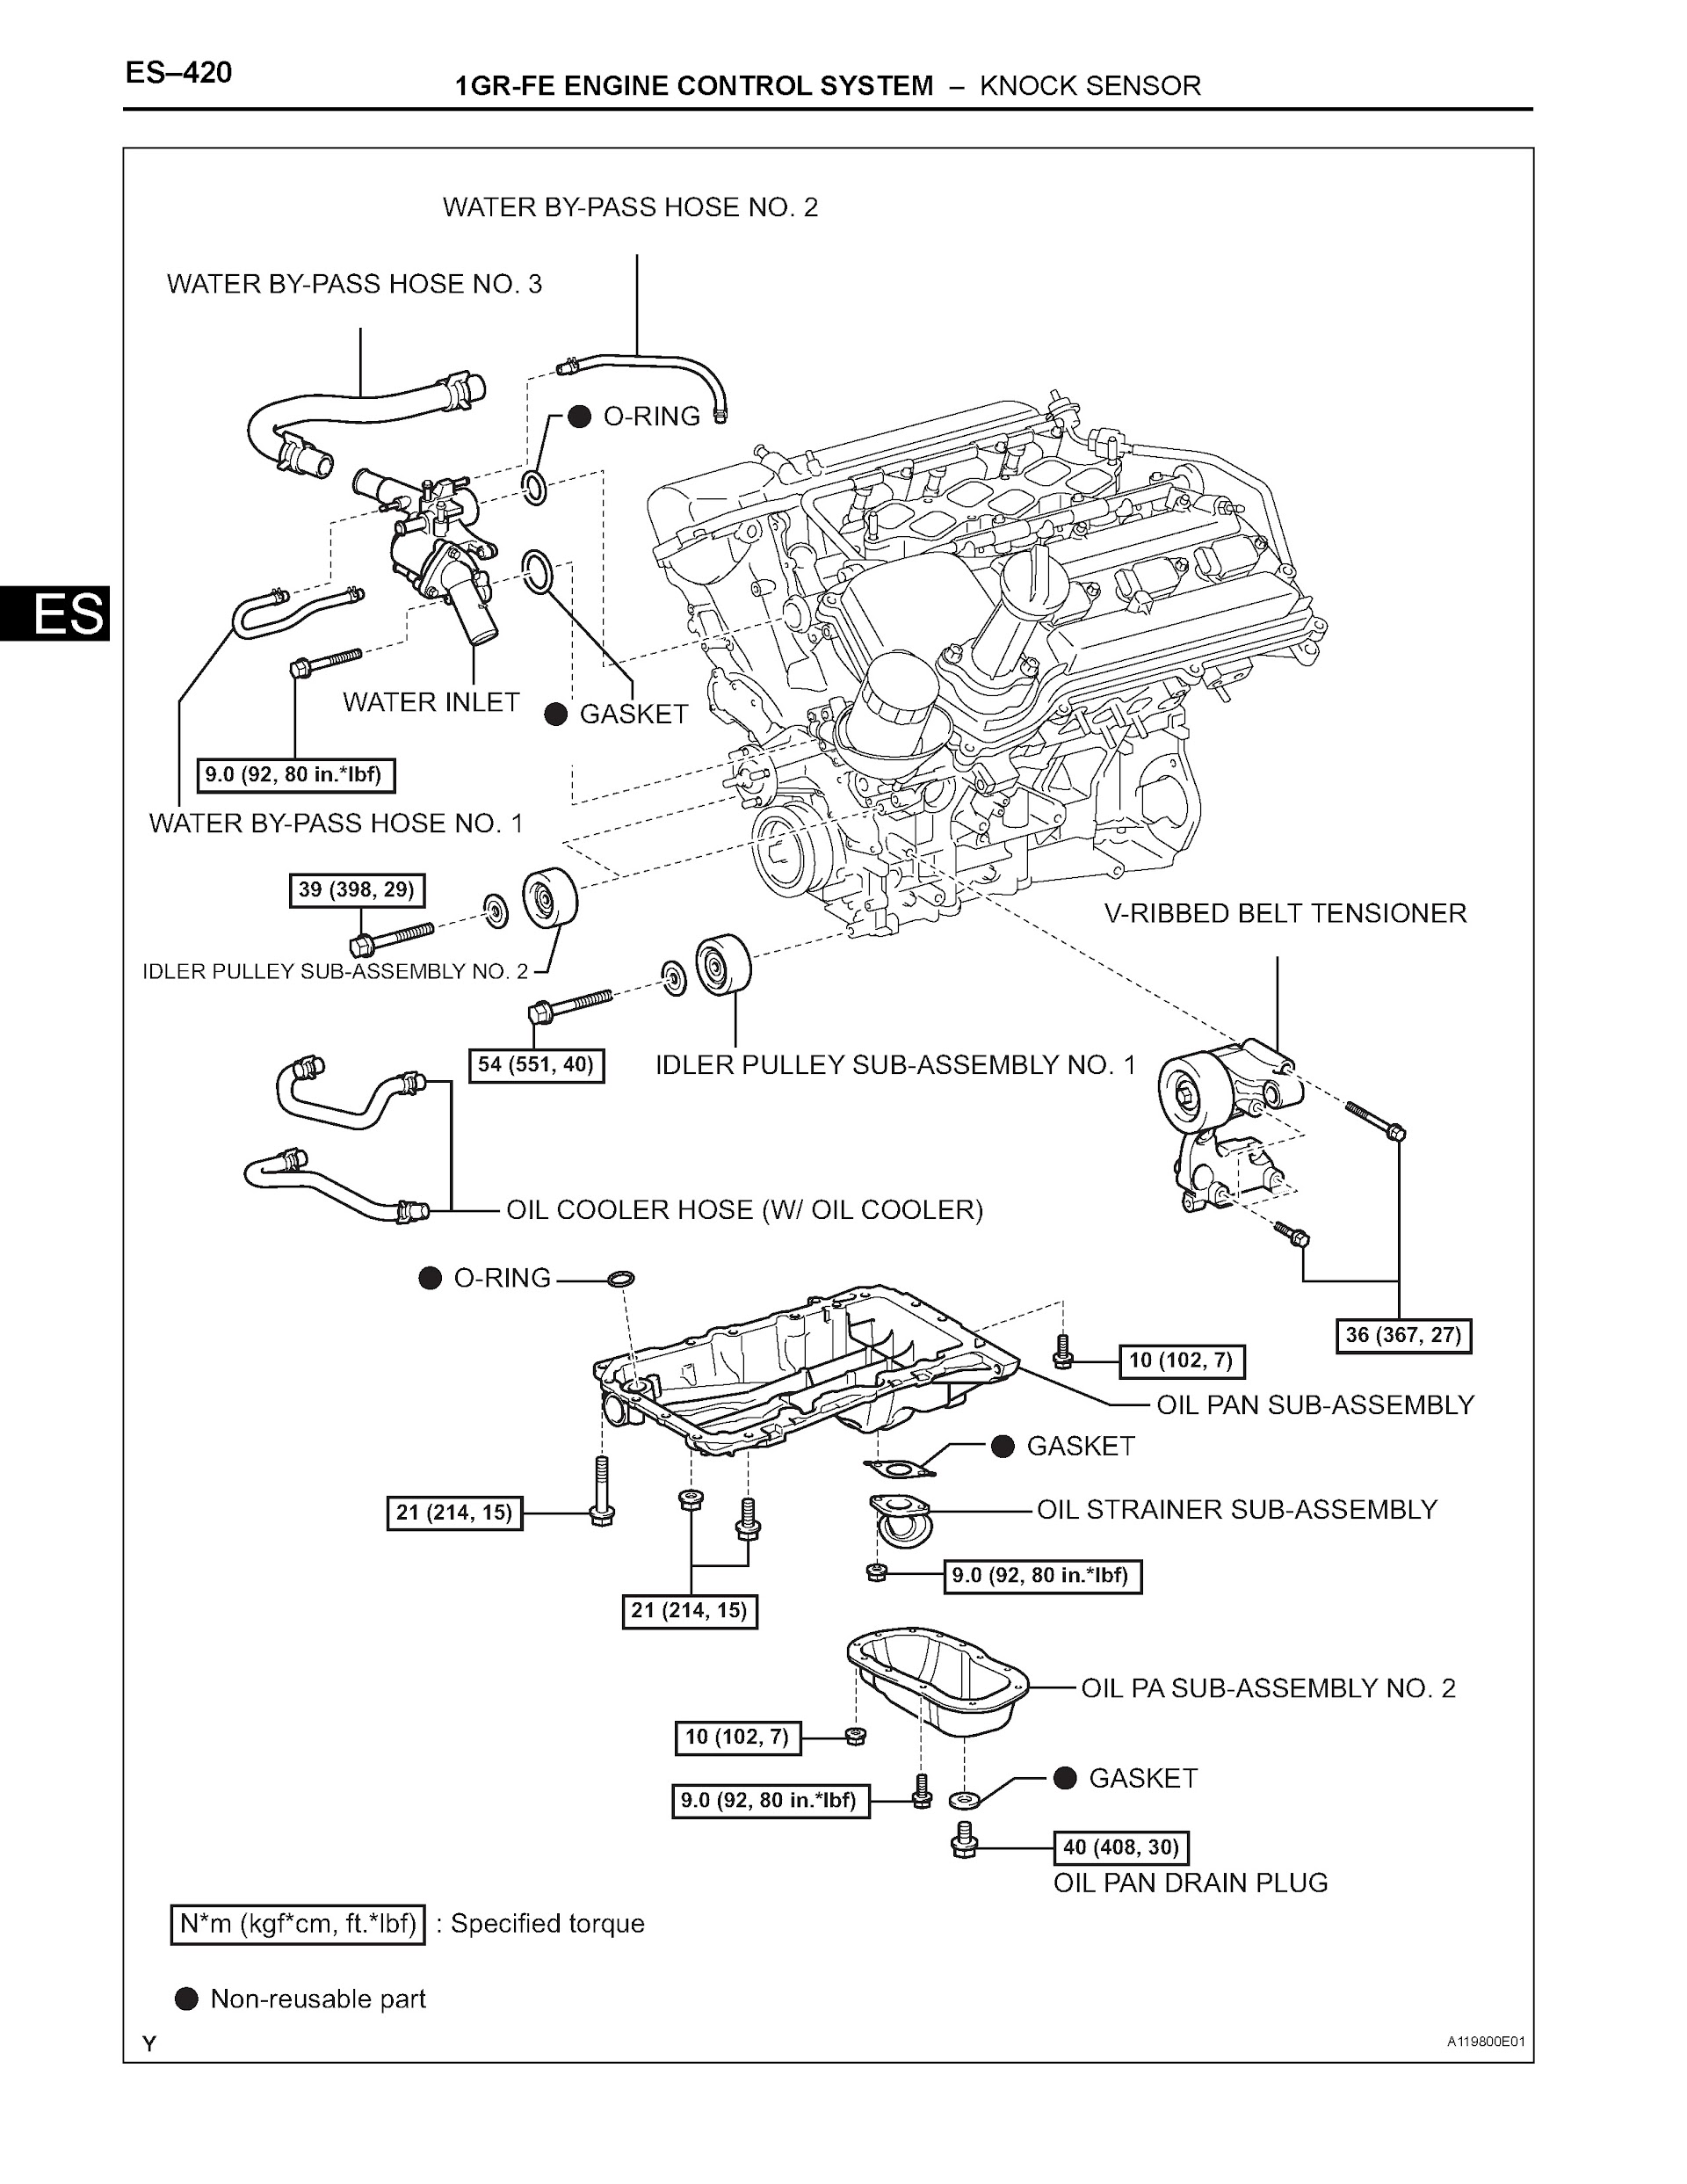 2007 Toyota 4Runner Repair Manual, Knock Sensor